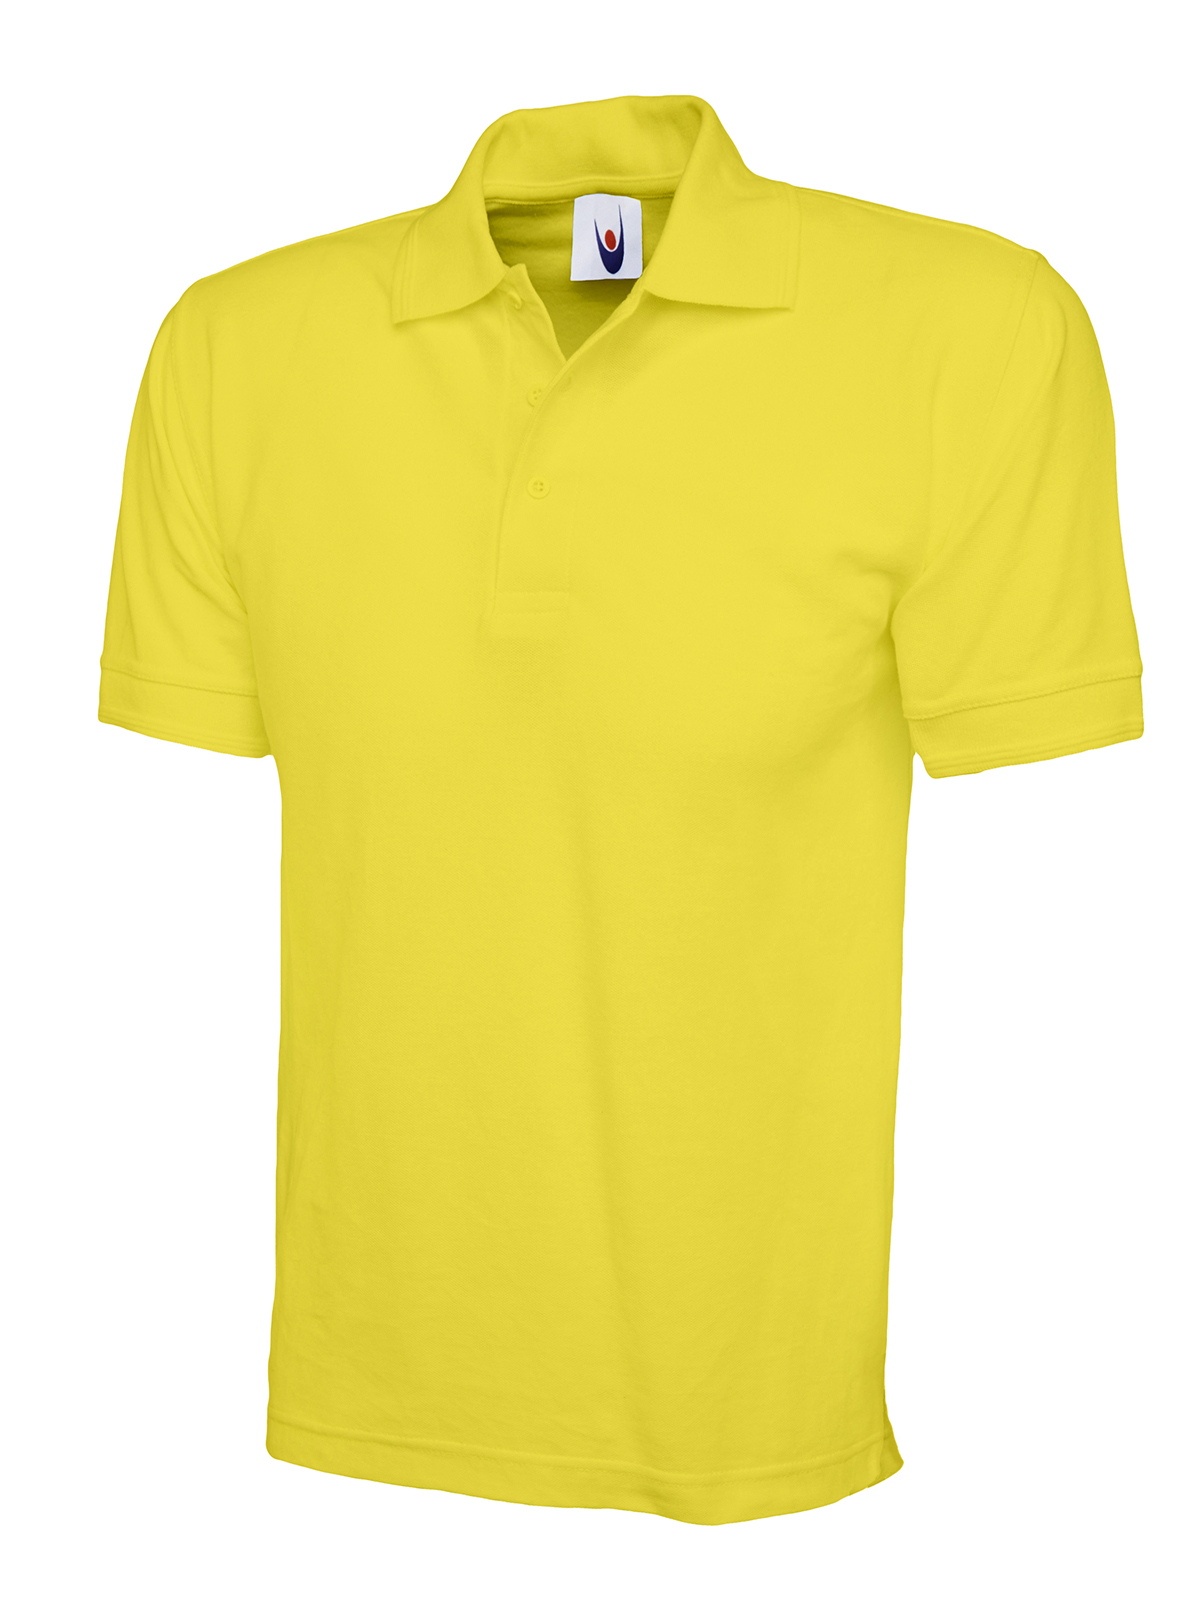 PSSY - Premium Poloshirt | Yellow